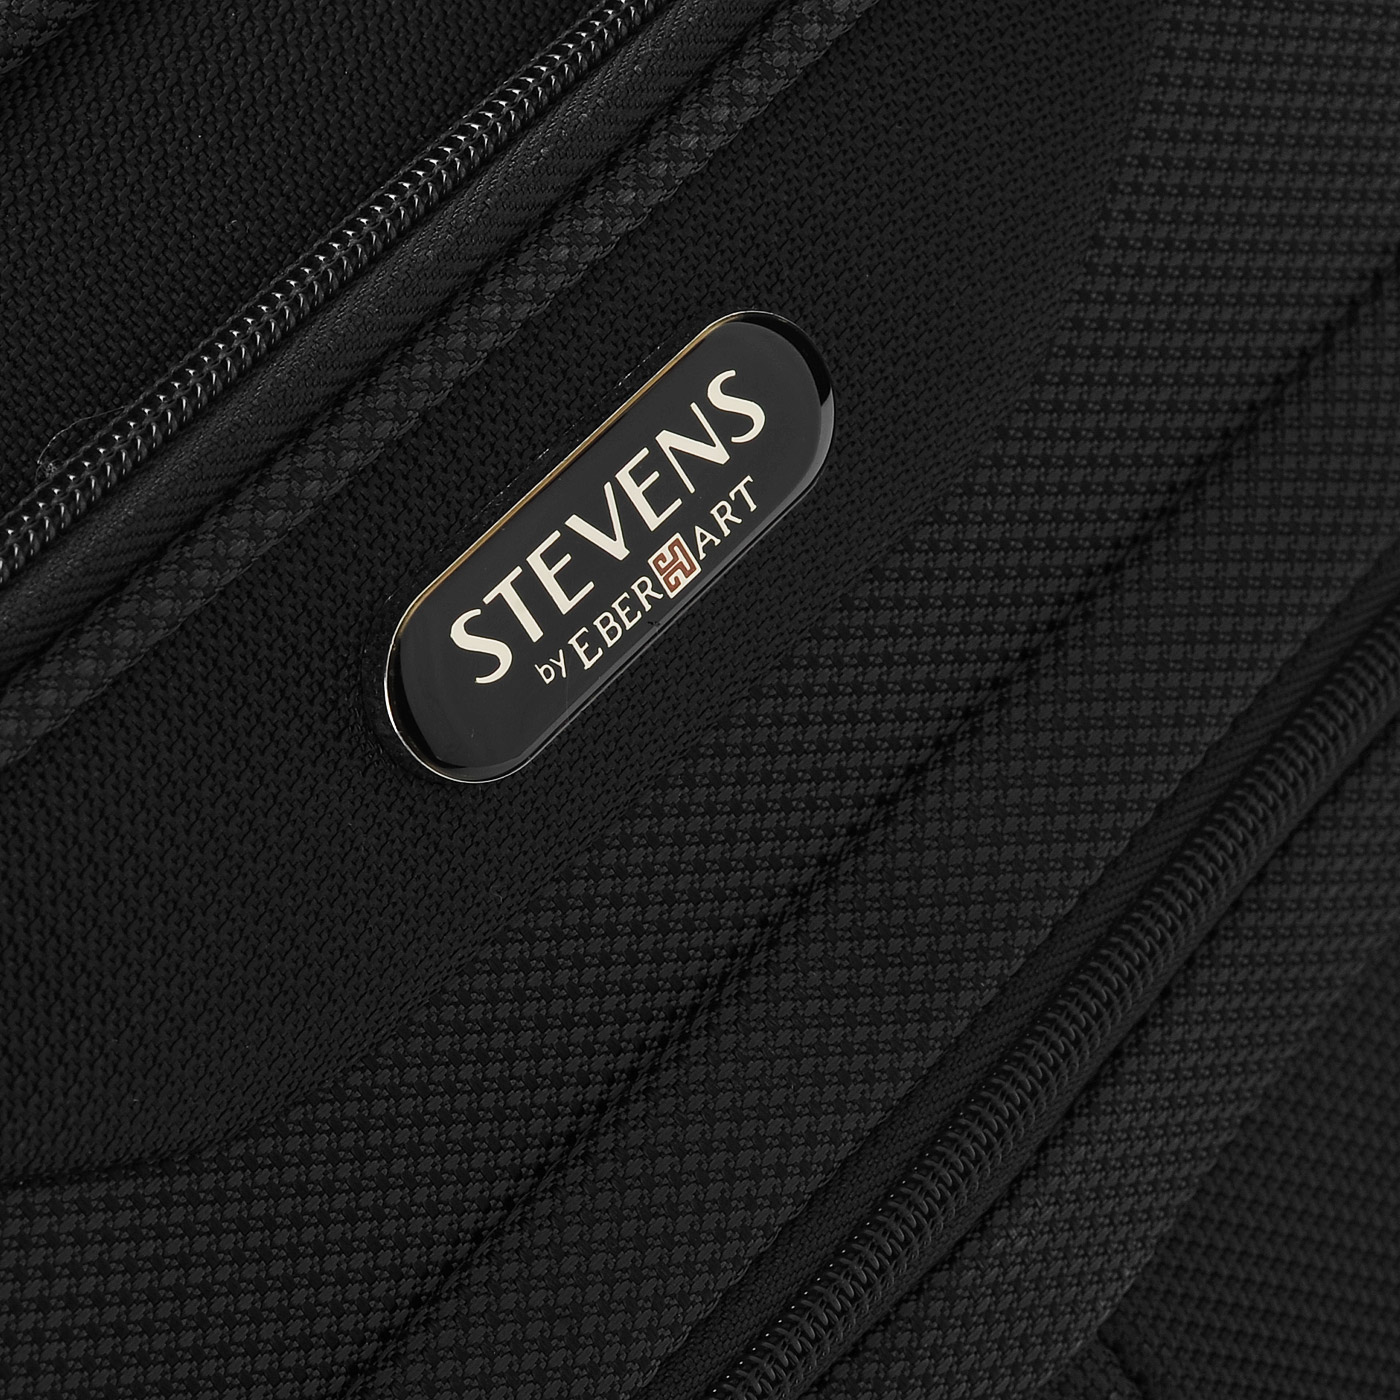 Тканевый чемодан с внешними карманами Stevens Continental